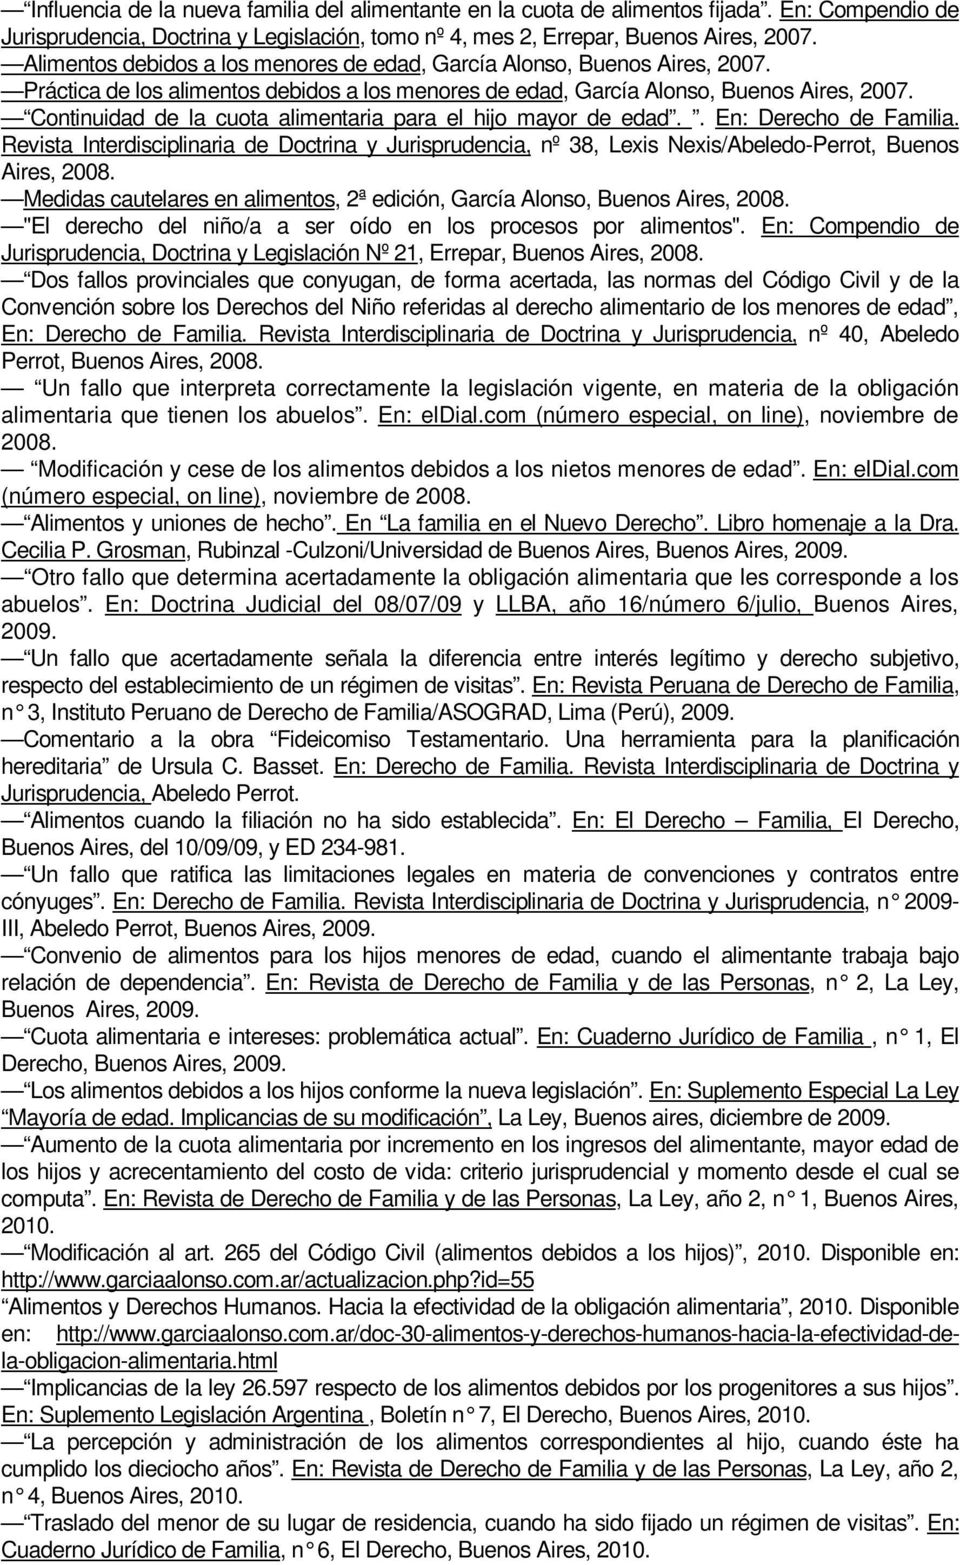 Continuidad de la cuota alimentaria para el hijo mayor de edad.. En: Derecho de Familia. Revista Interdisciplinaria de Doctrina y Jurisprudencia, nº 38, Lexis Nexis/Abeledo-Perrot, Buenos Aires, 2008.